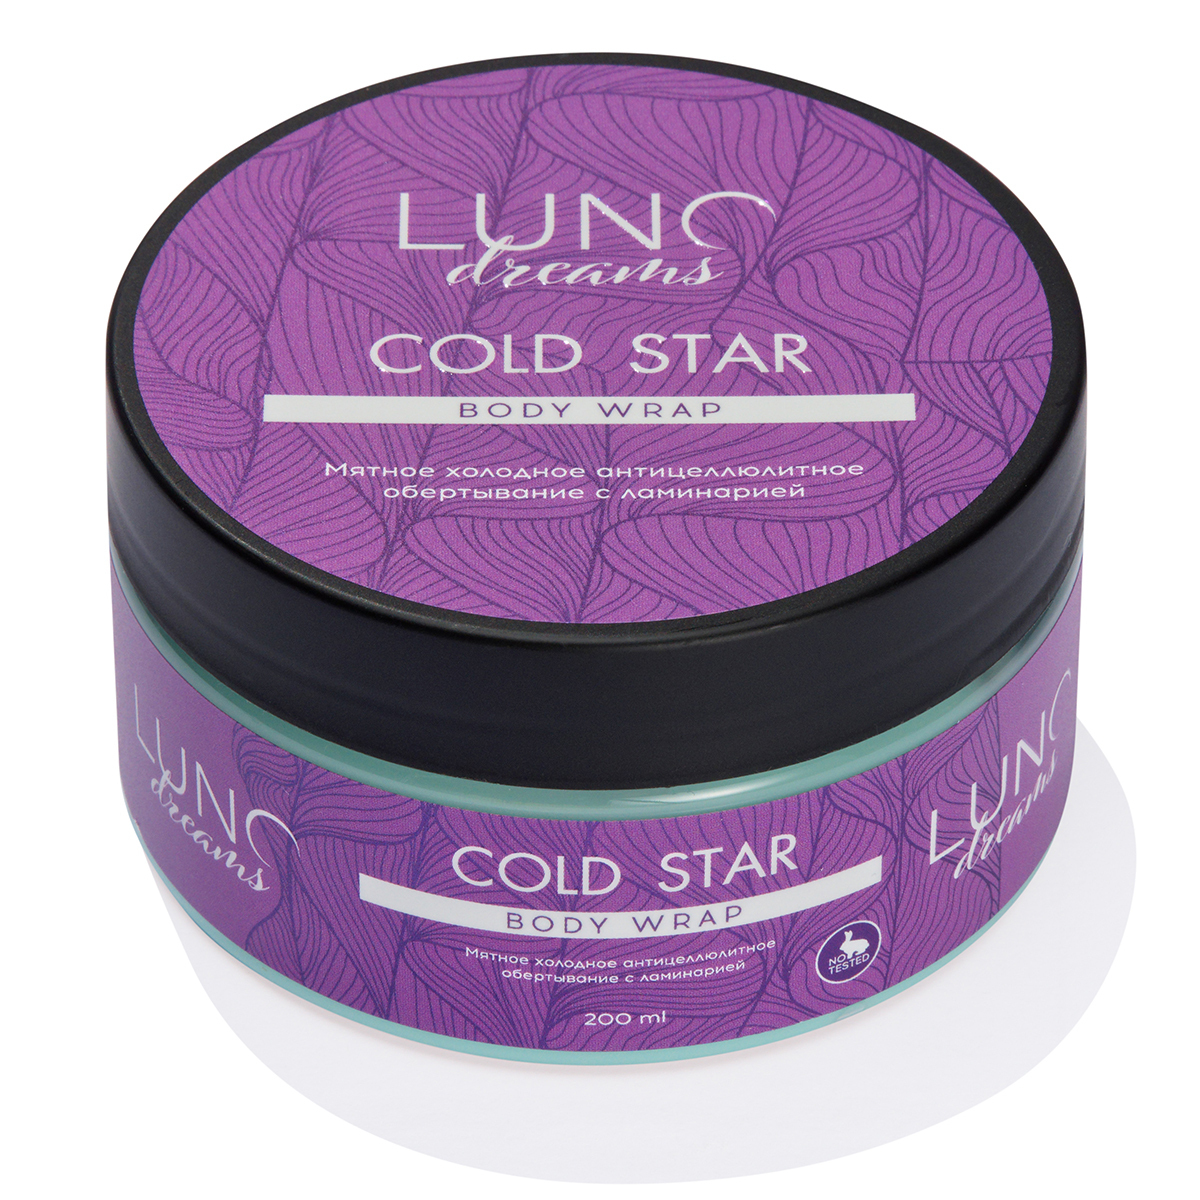 Холодное антицеллюлитное обертывание LUNO dreams мятное с ламинарией COLD STAR 200 мл